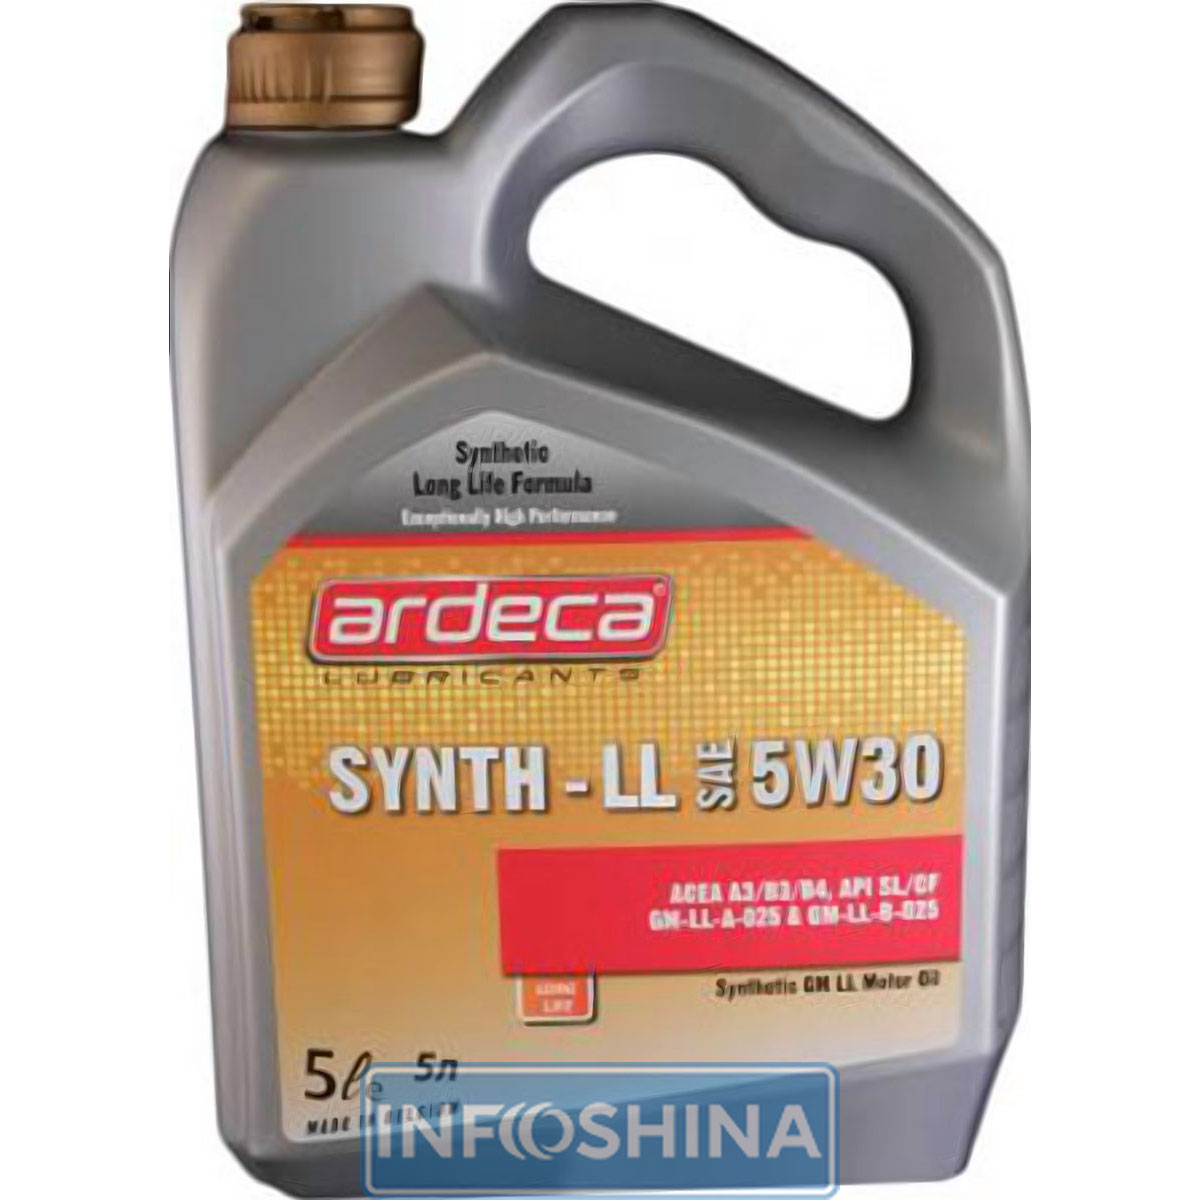 Ardeca Synth-LL 5W-30